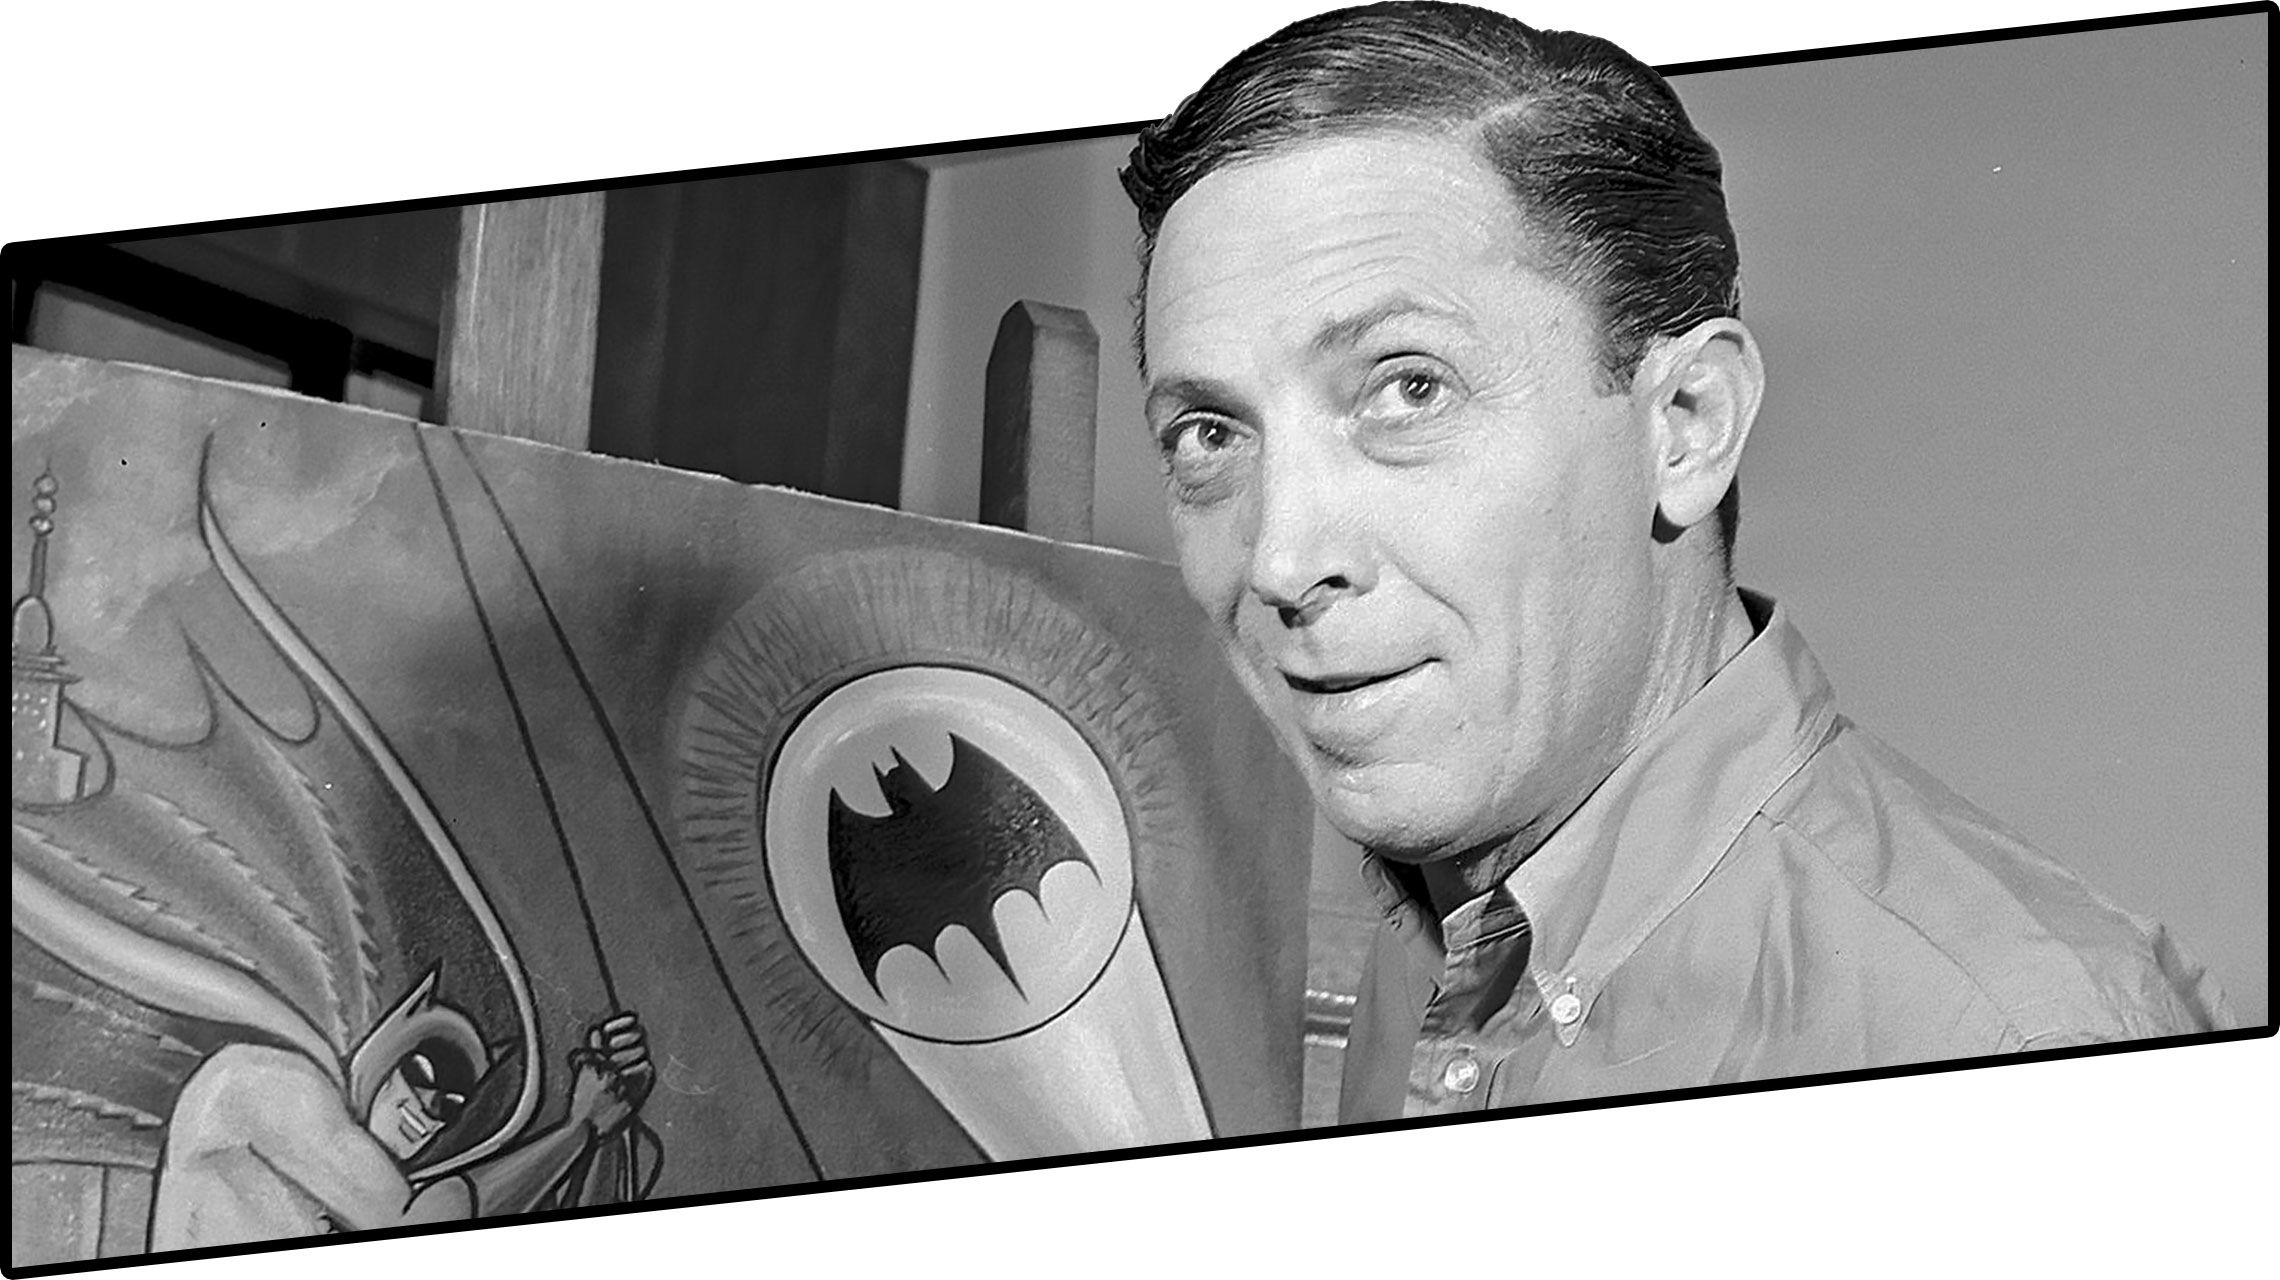 Batman co-creator Bob Kane in 1989